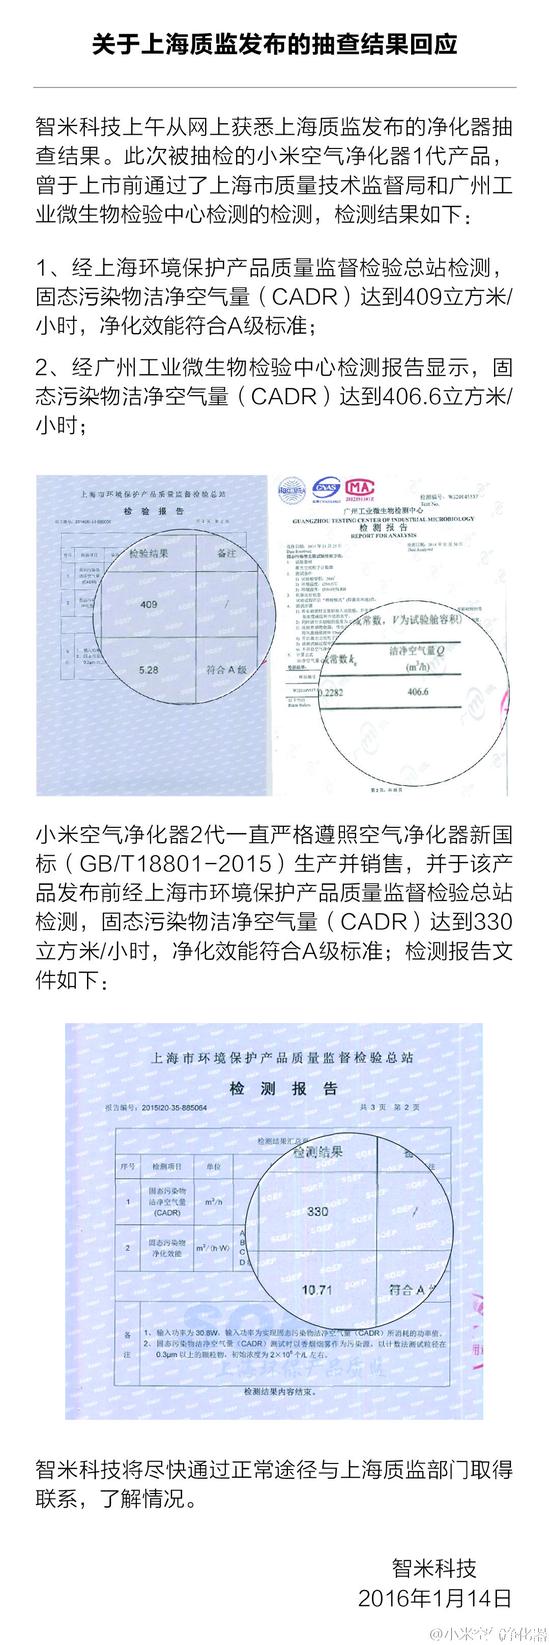 上海质检:小米空气净化器1代被爆质量问题严重 官方回应